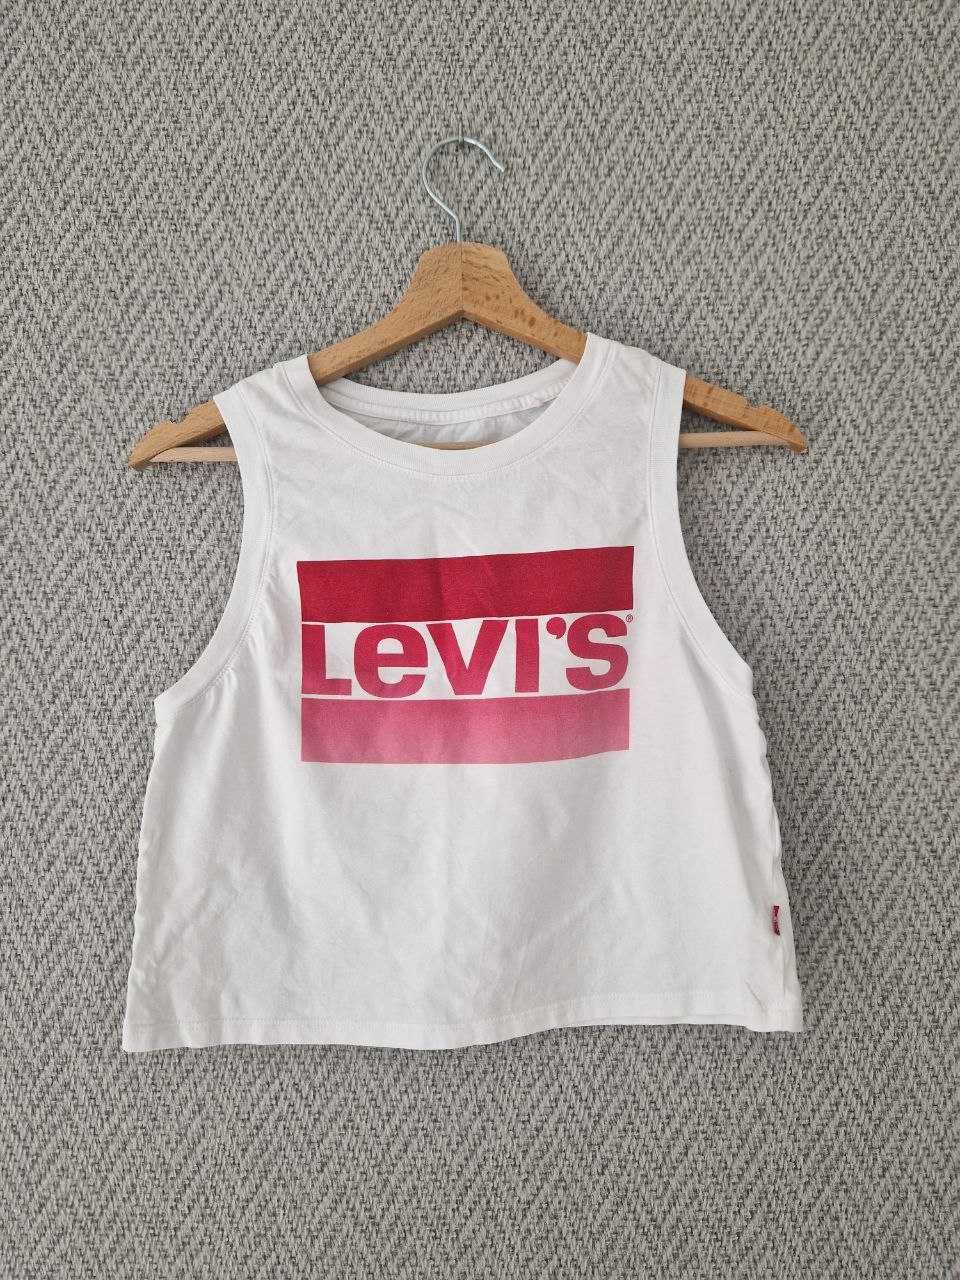 koszulka Levi's rozmiar XS/S